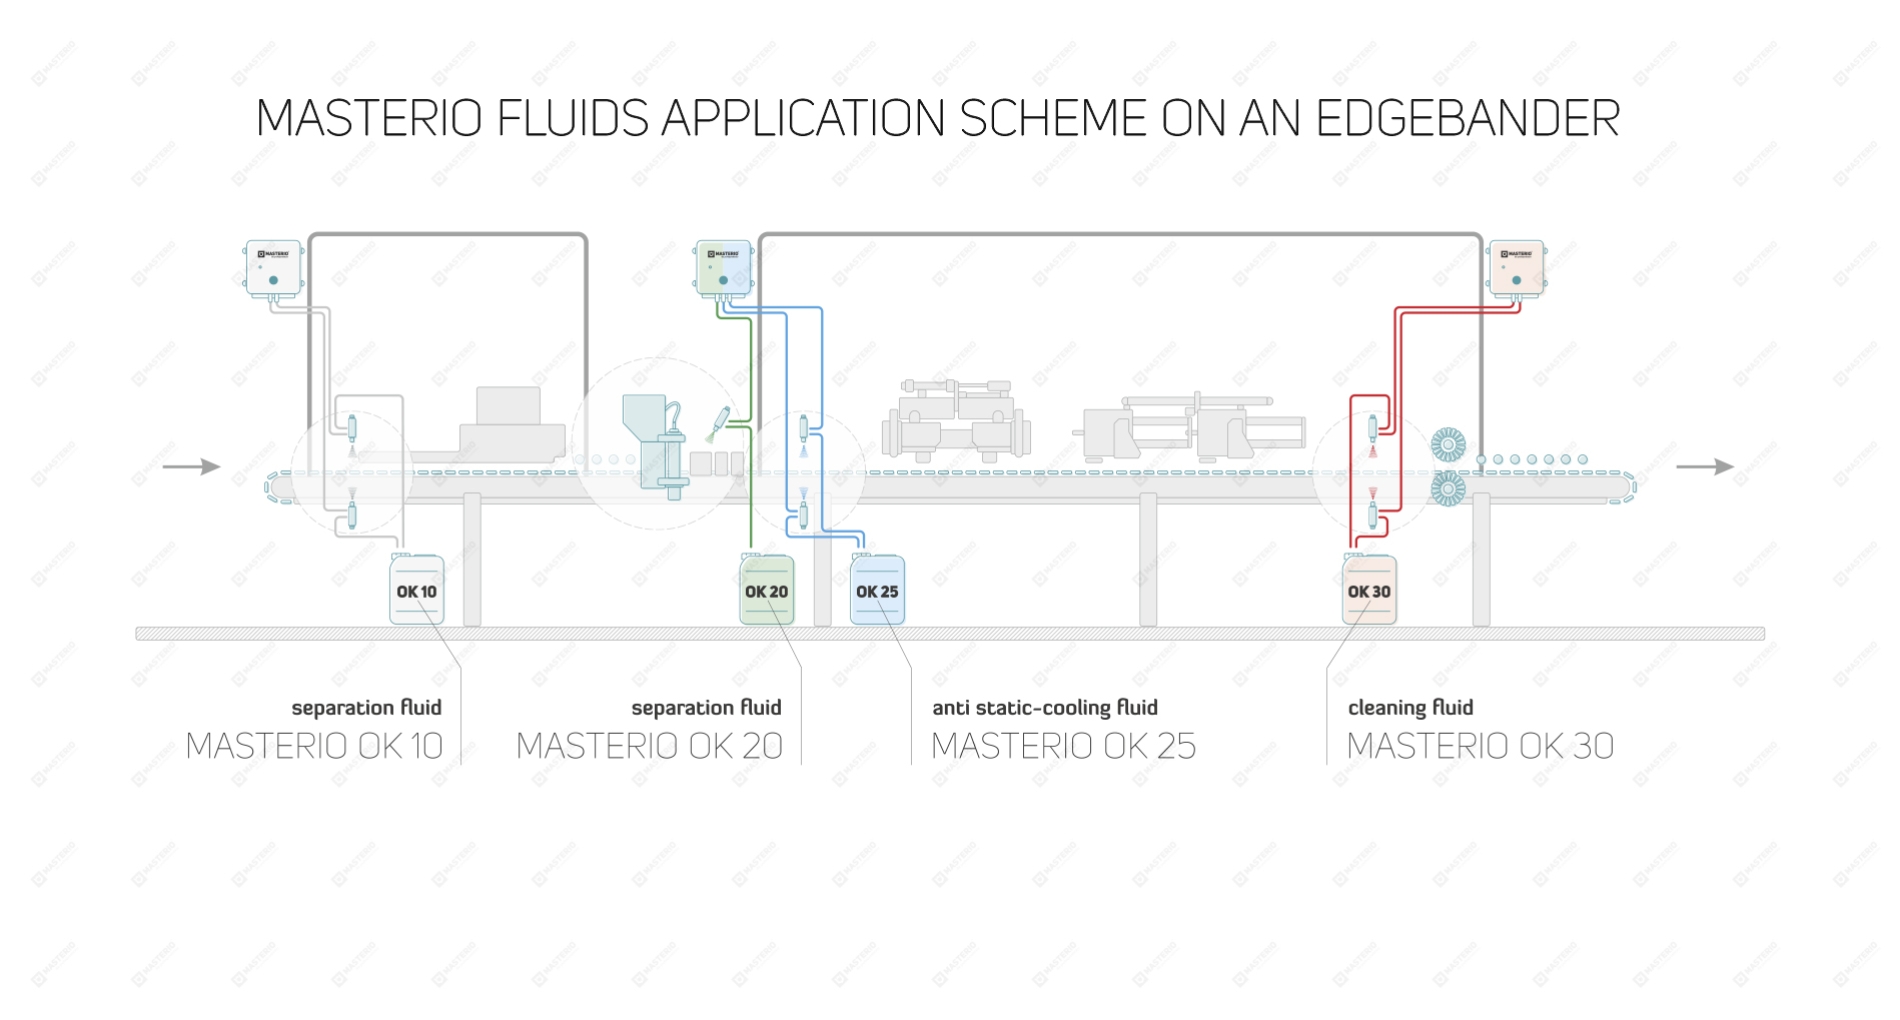 Masterio fluids application scheme on an edgebander